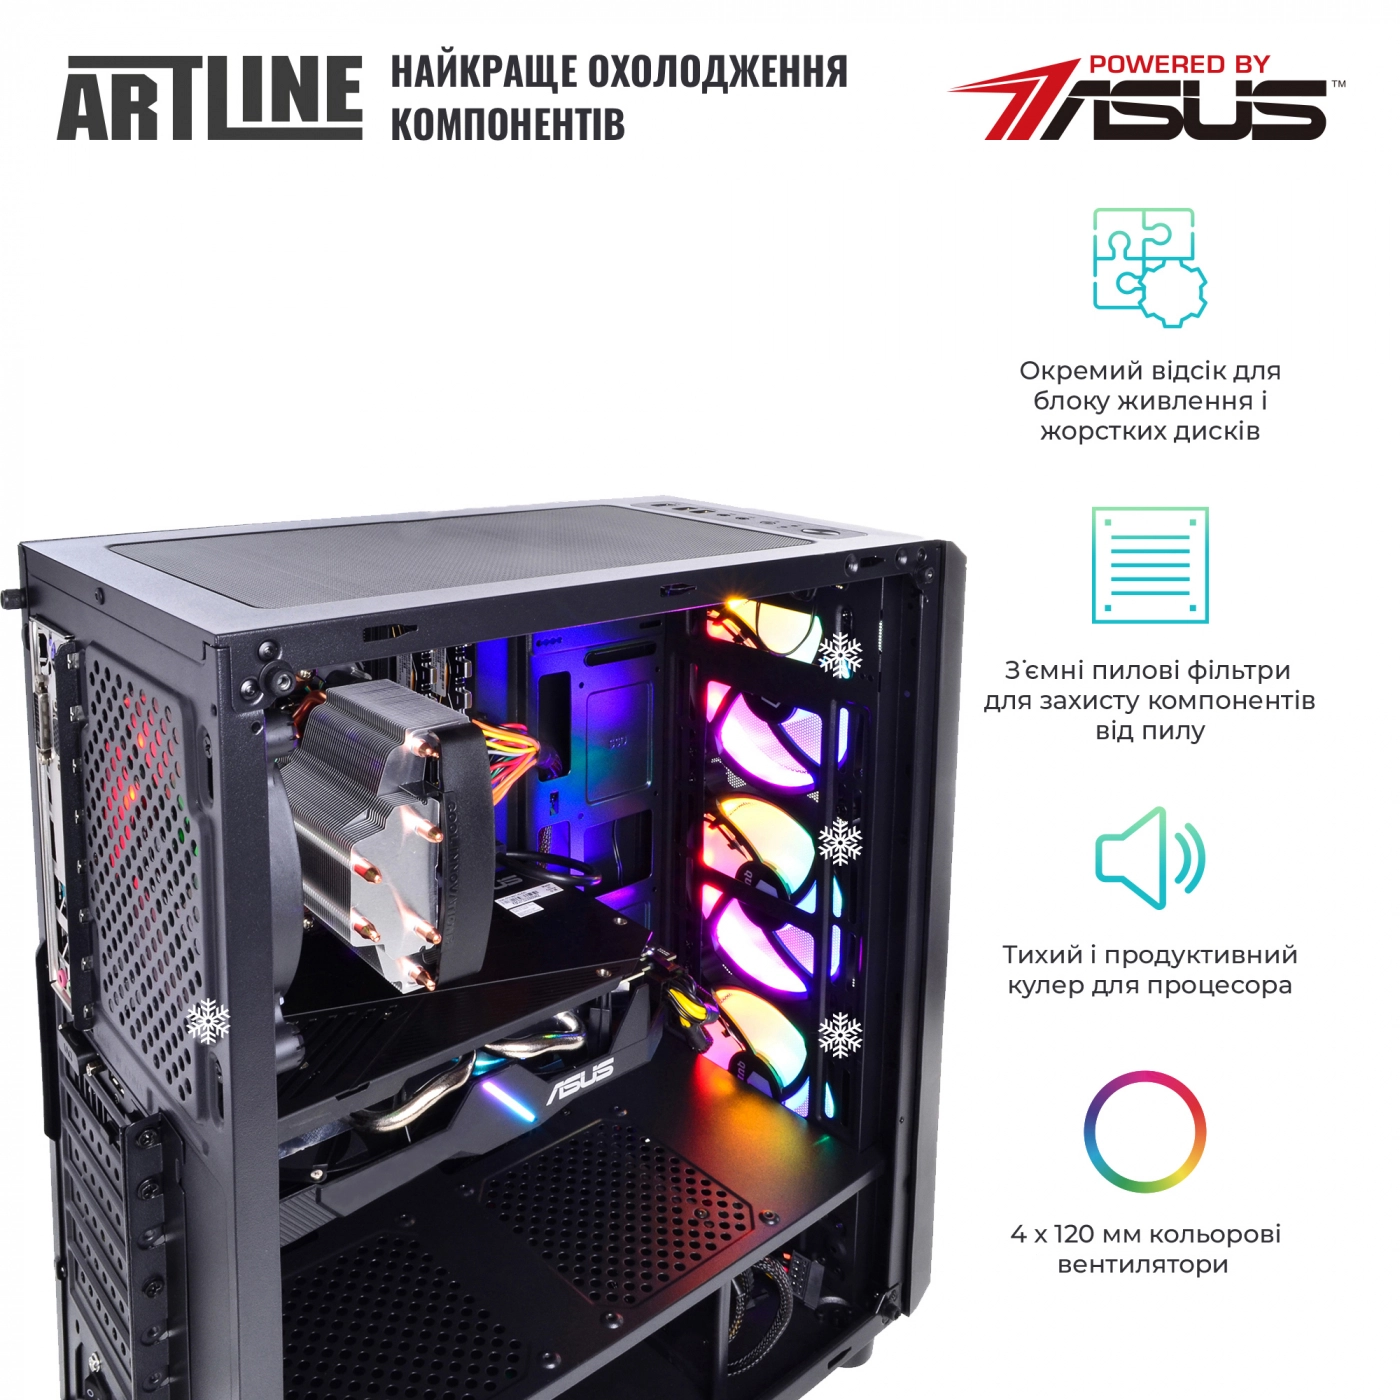 Купить Компьютер ARTLINE Gaming X36v16 - фото 3